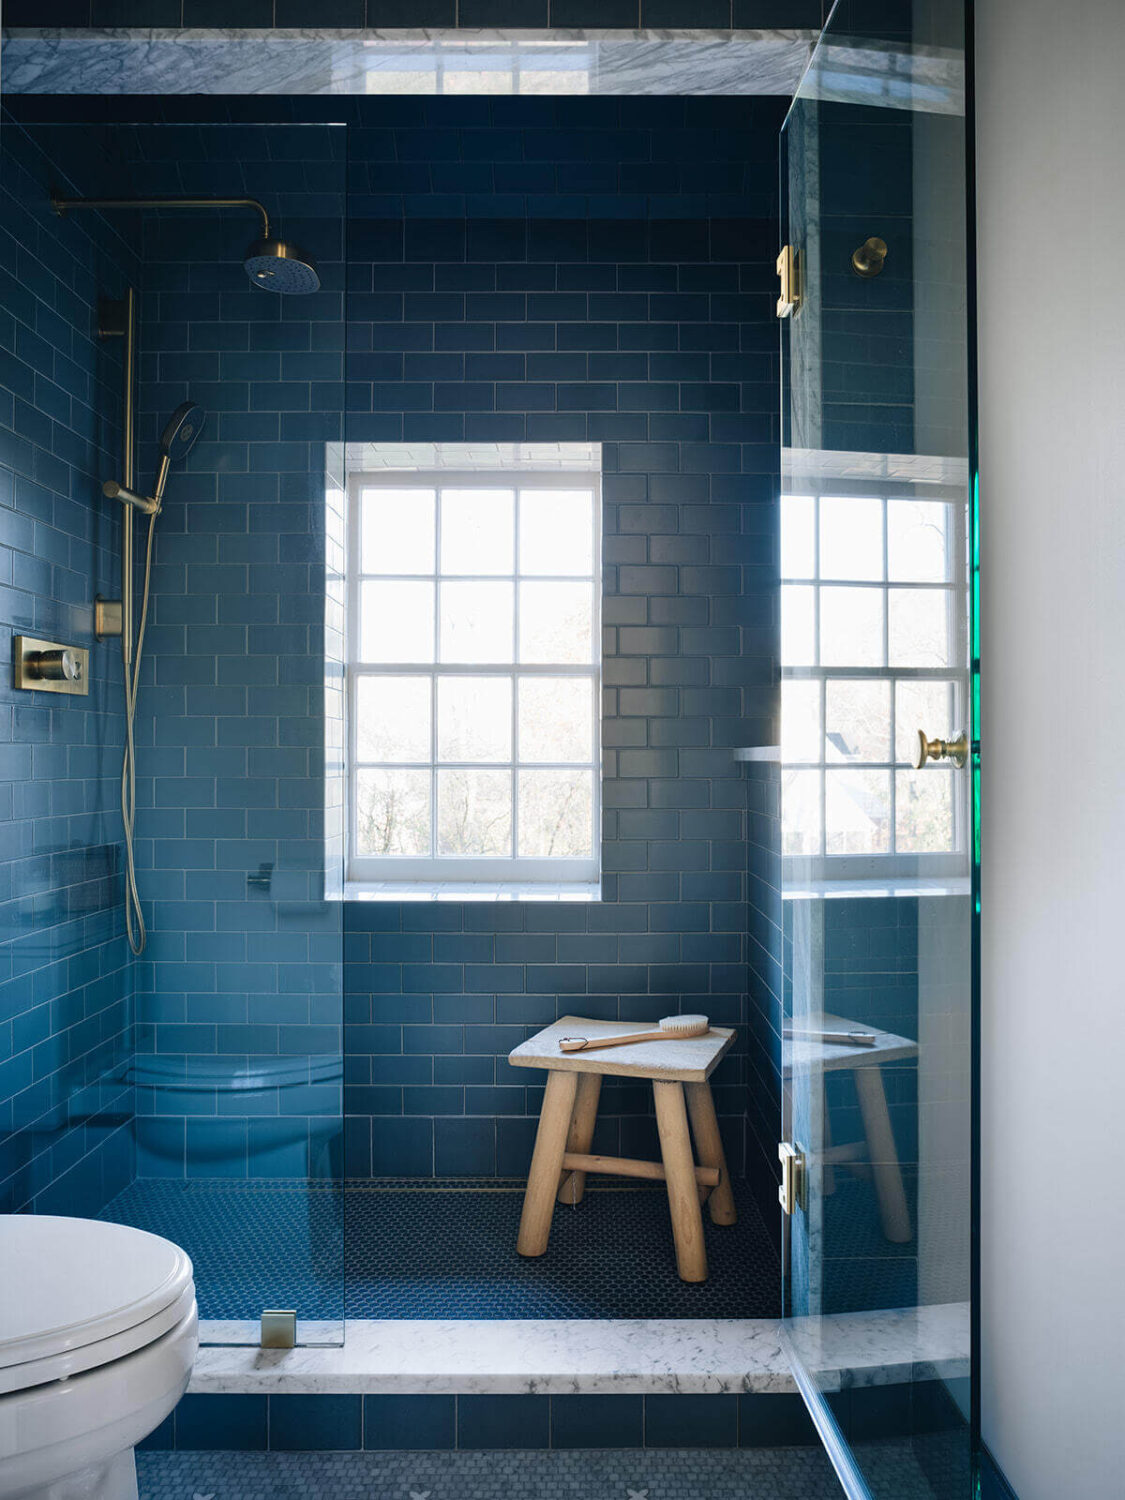 bathroom-large-shower-window-blue-tiles-jean-stoffer-design-nordroom